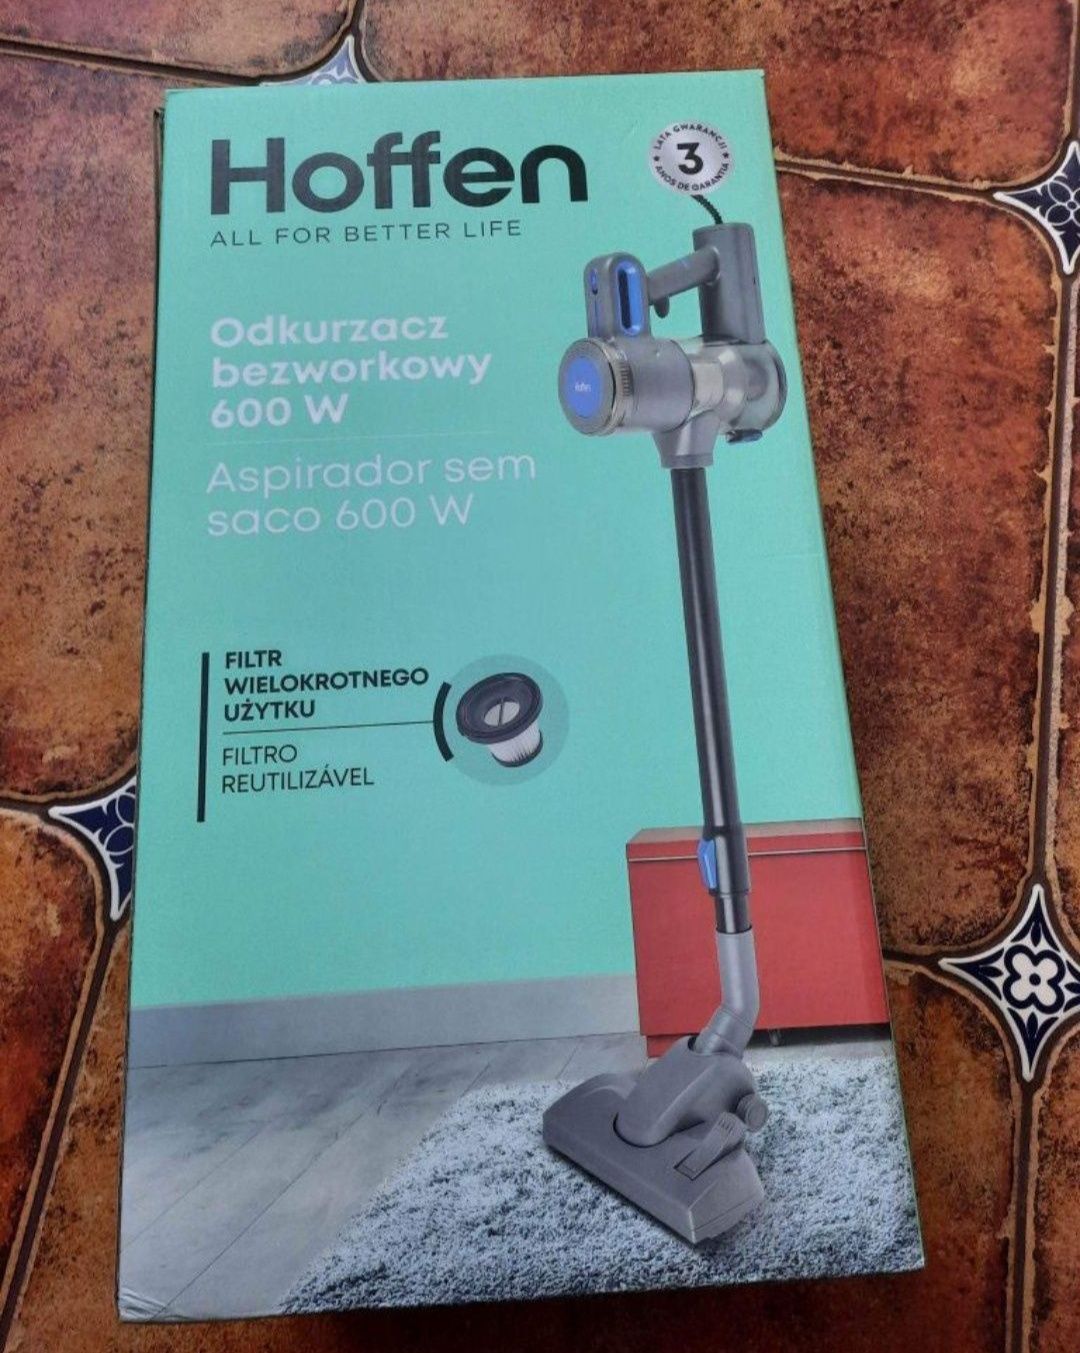 Nowy odkurzacz bezworkowy Hoffen 600 W